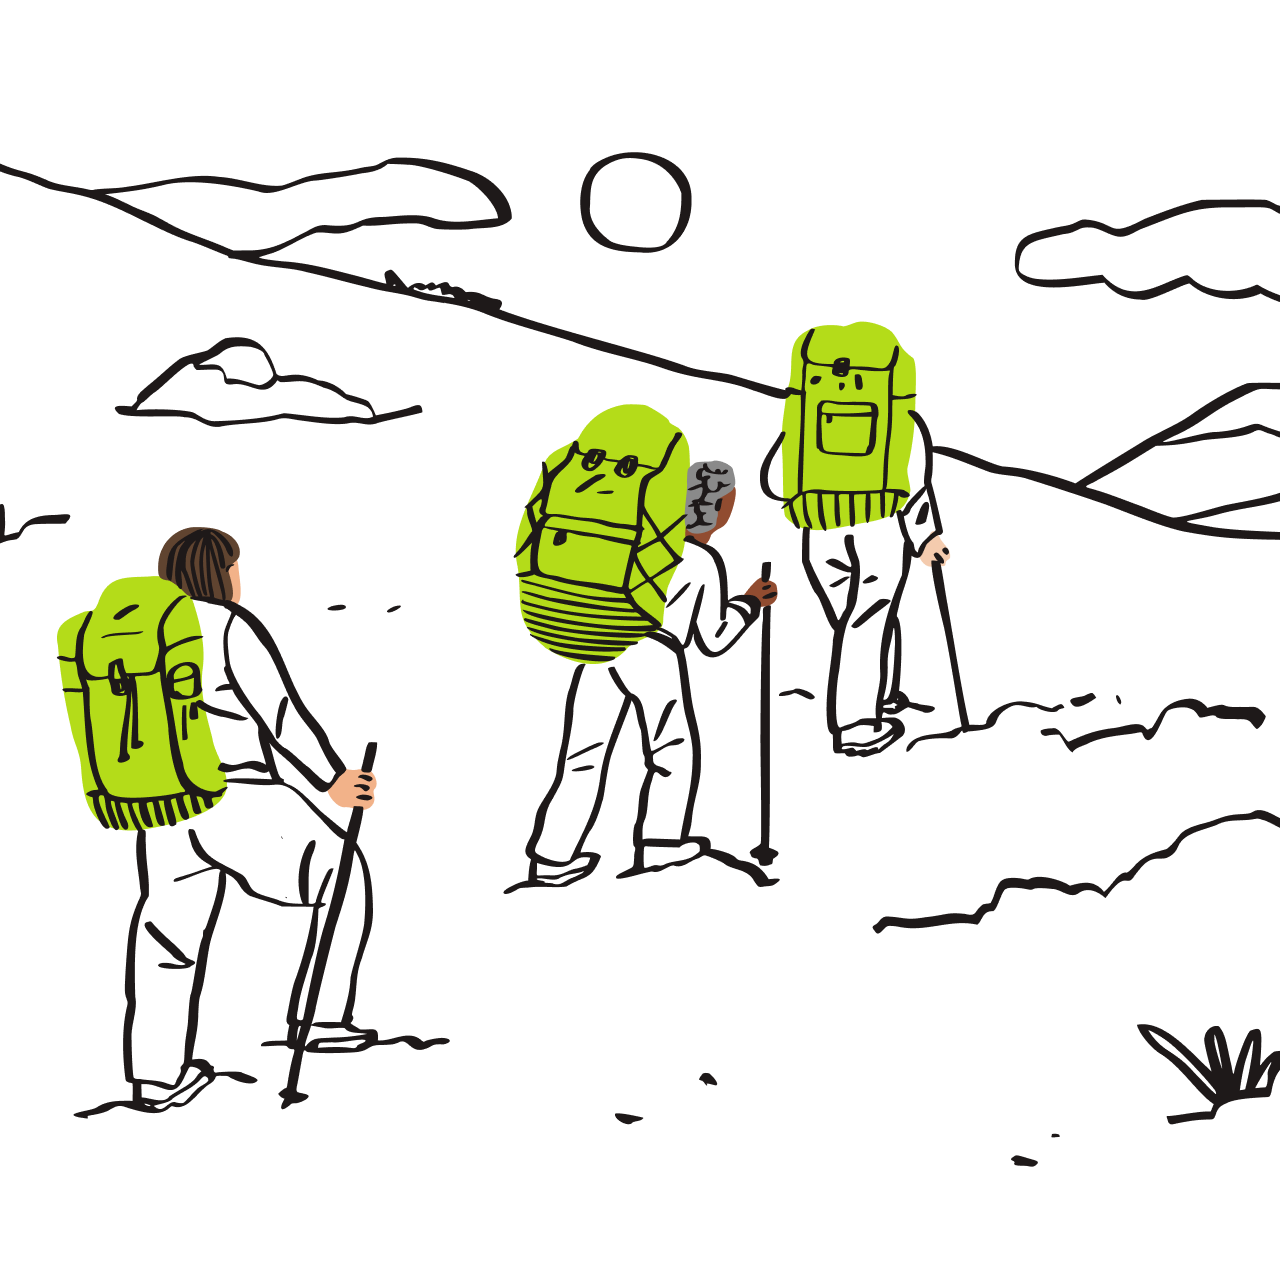 Immagine di tre backpacker durante un'escursione.